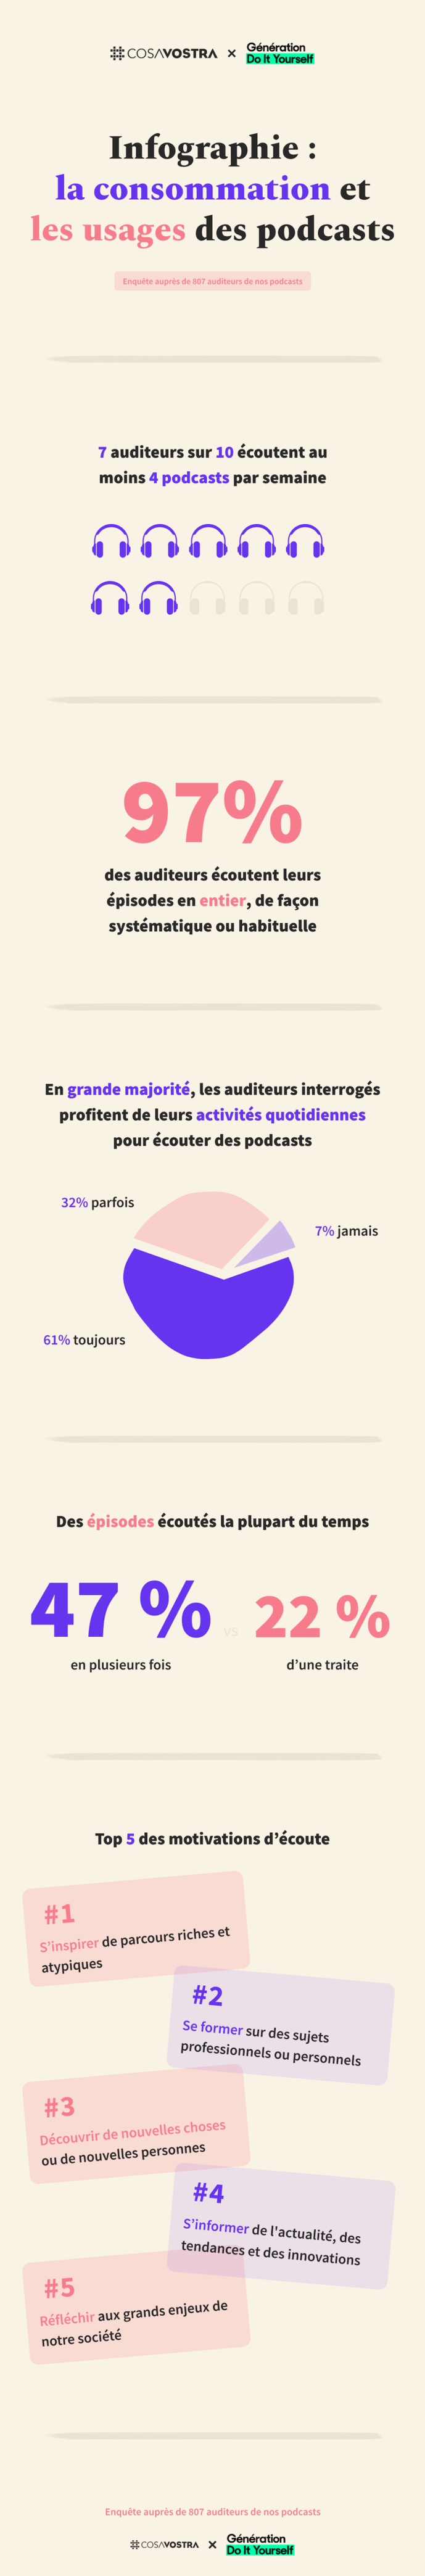 Une infographie sur la consommation des podcasts